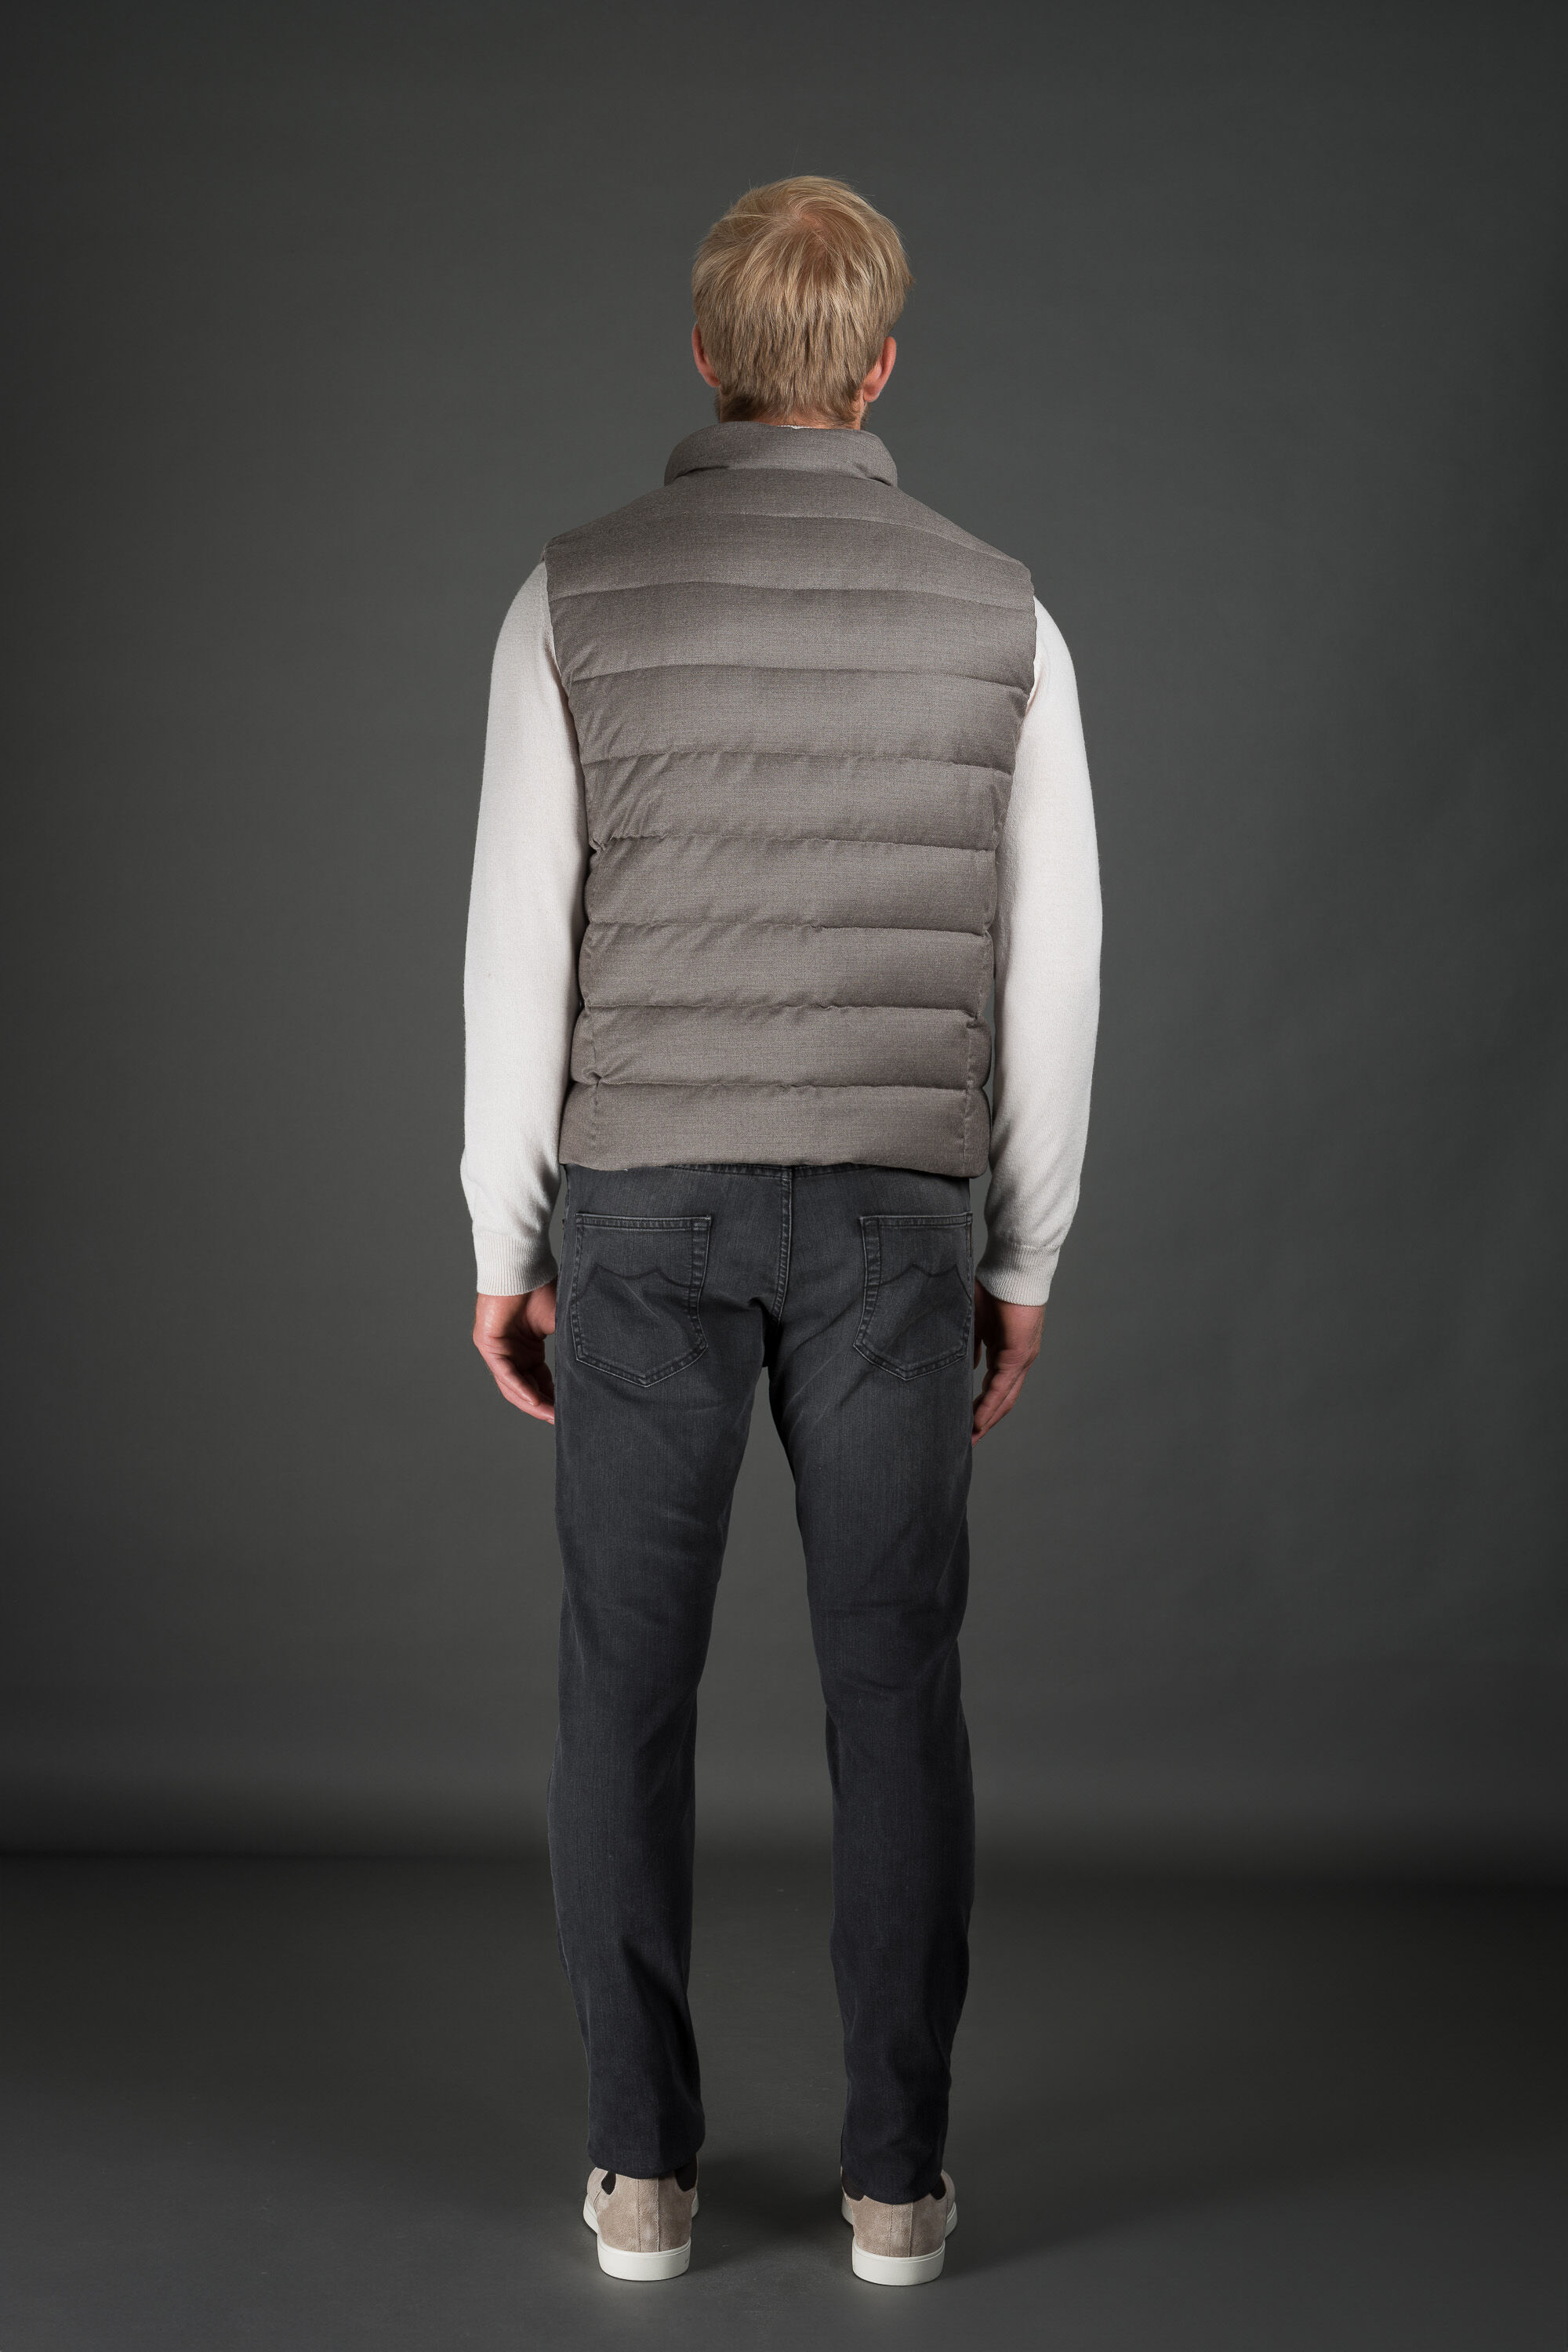 OLIVER-L in BEIGE: Luxury Italian Vests | MooRER®